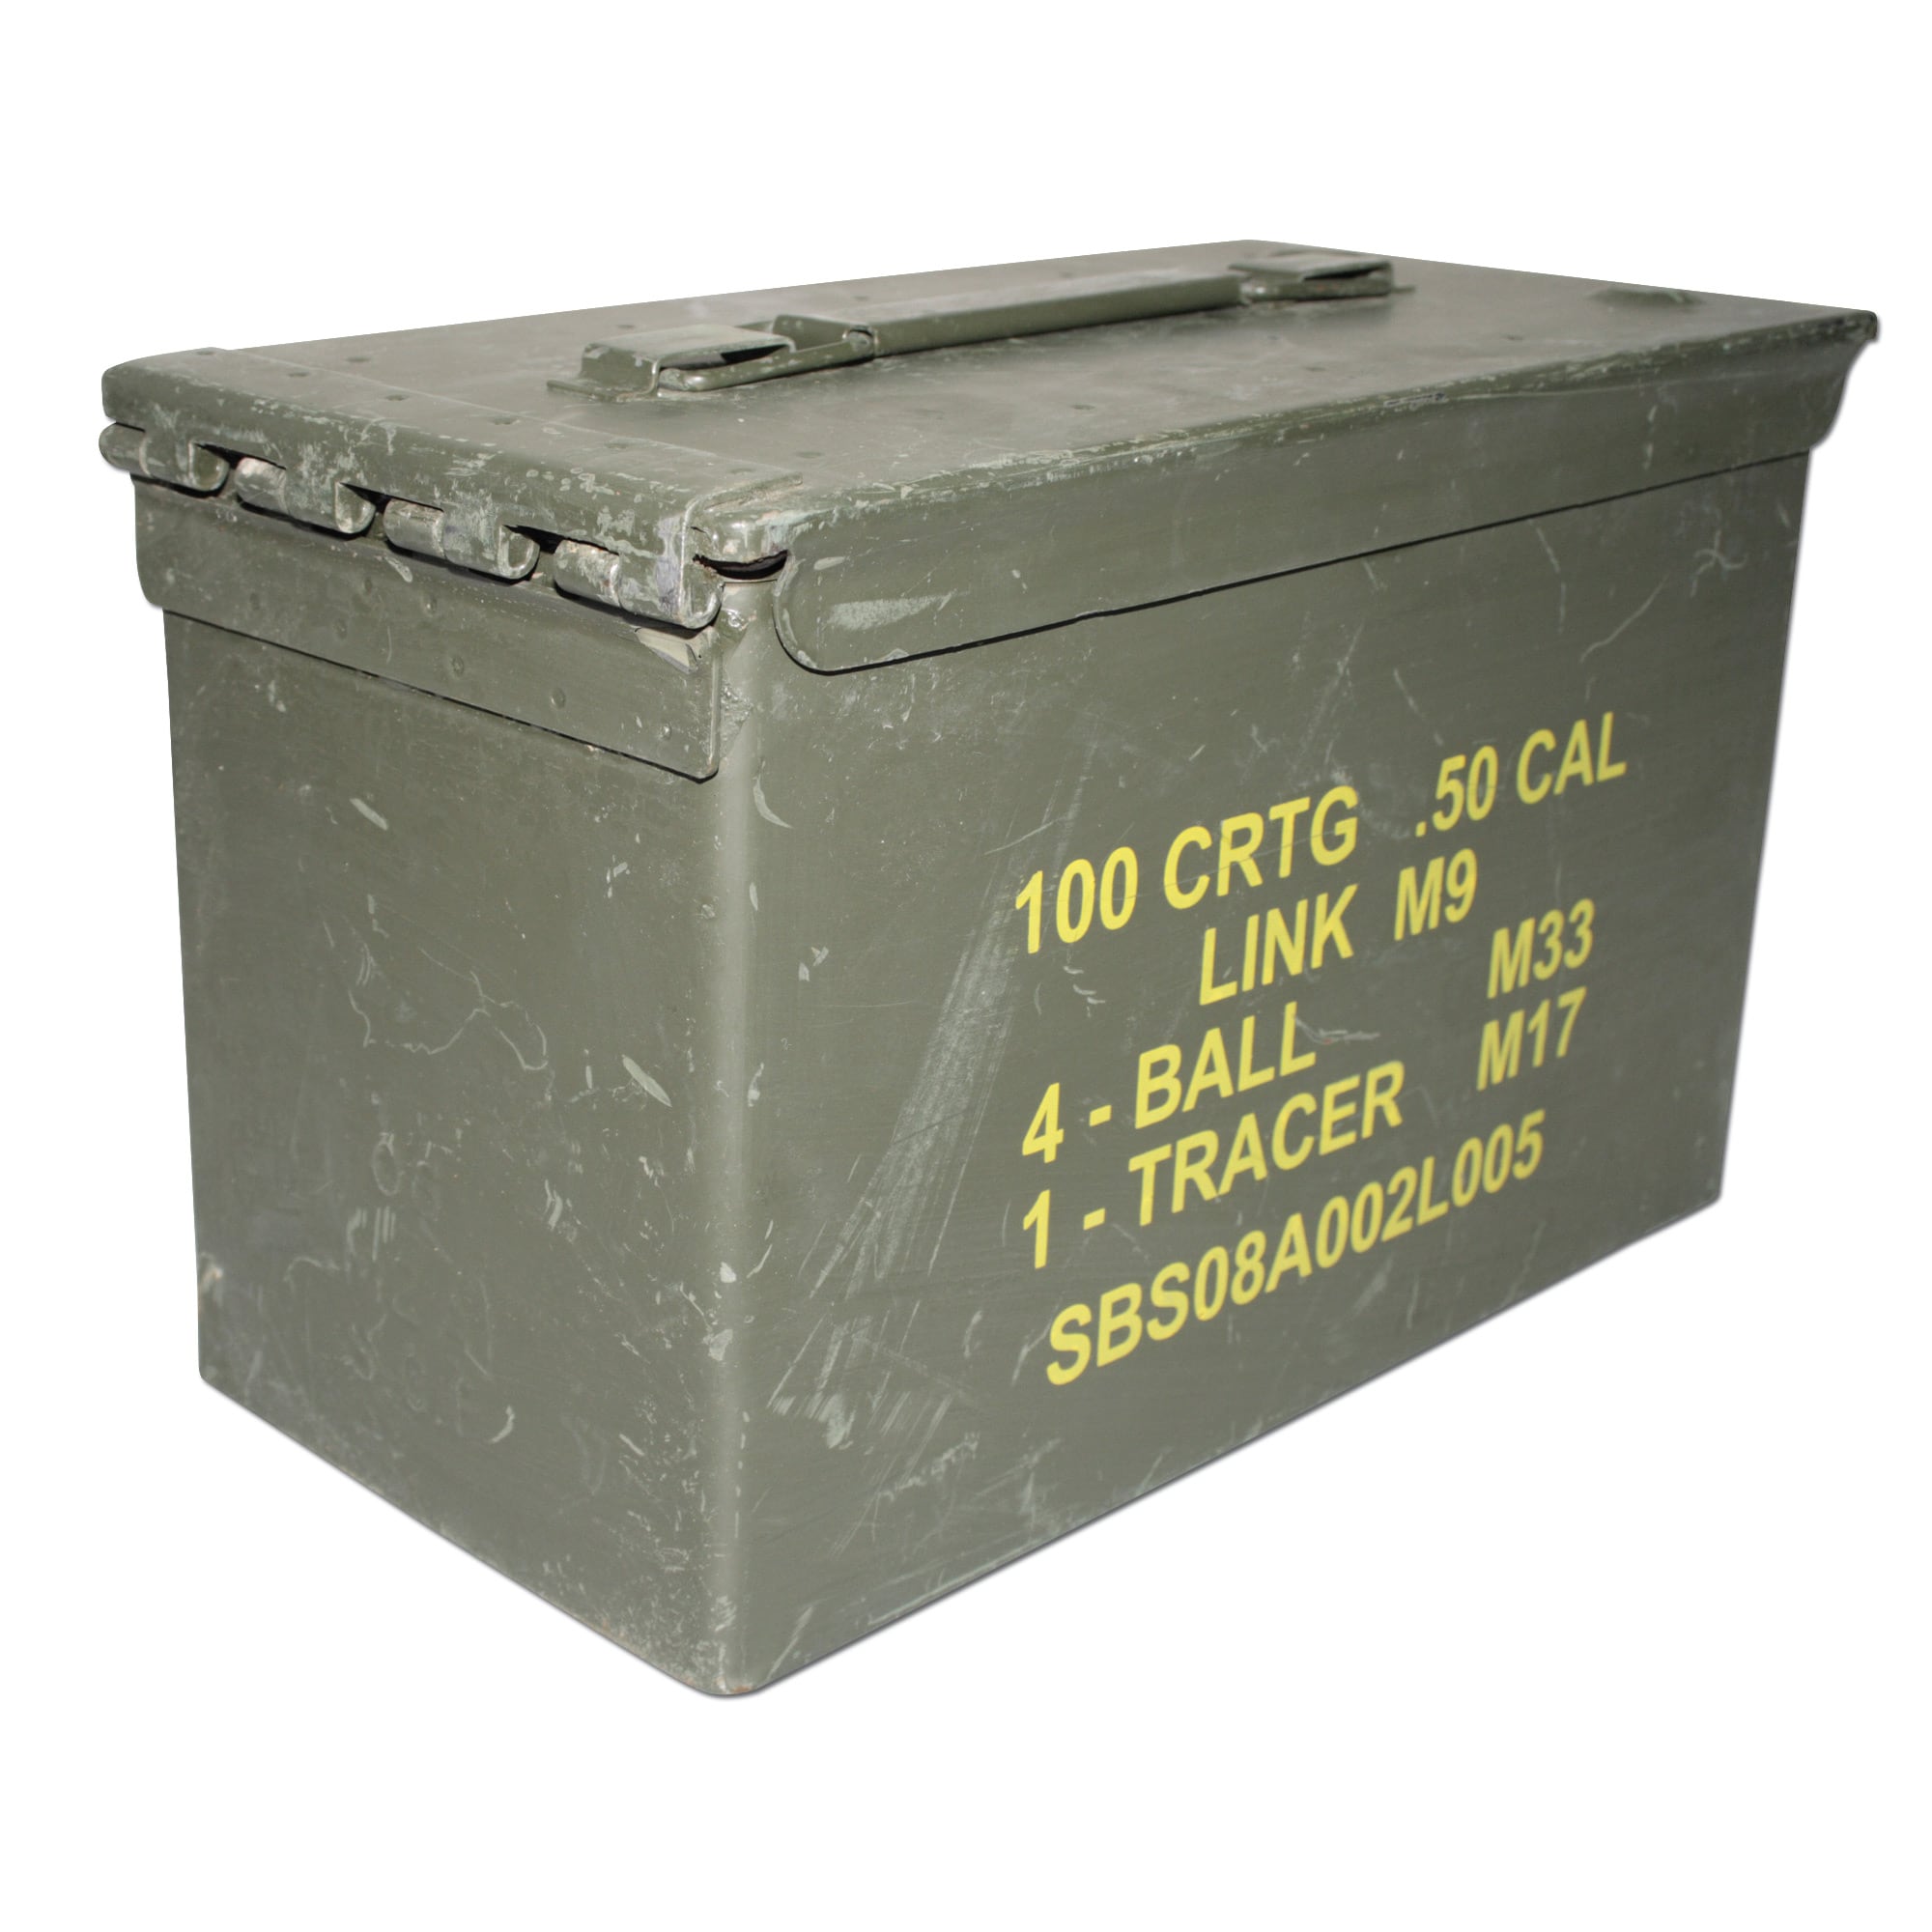 Air et étanche! Org US/BW munitions boîte taille 5 44 x 14 x 25 cm 